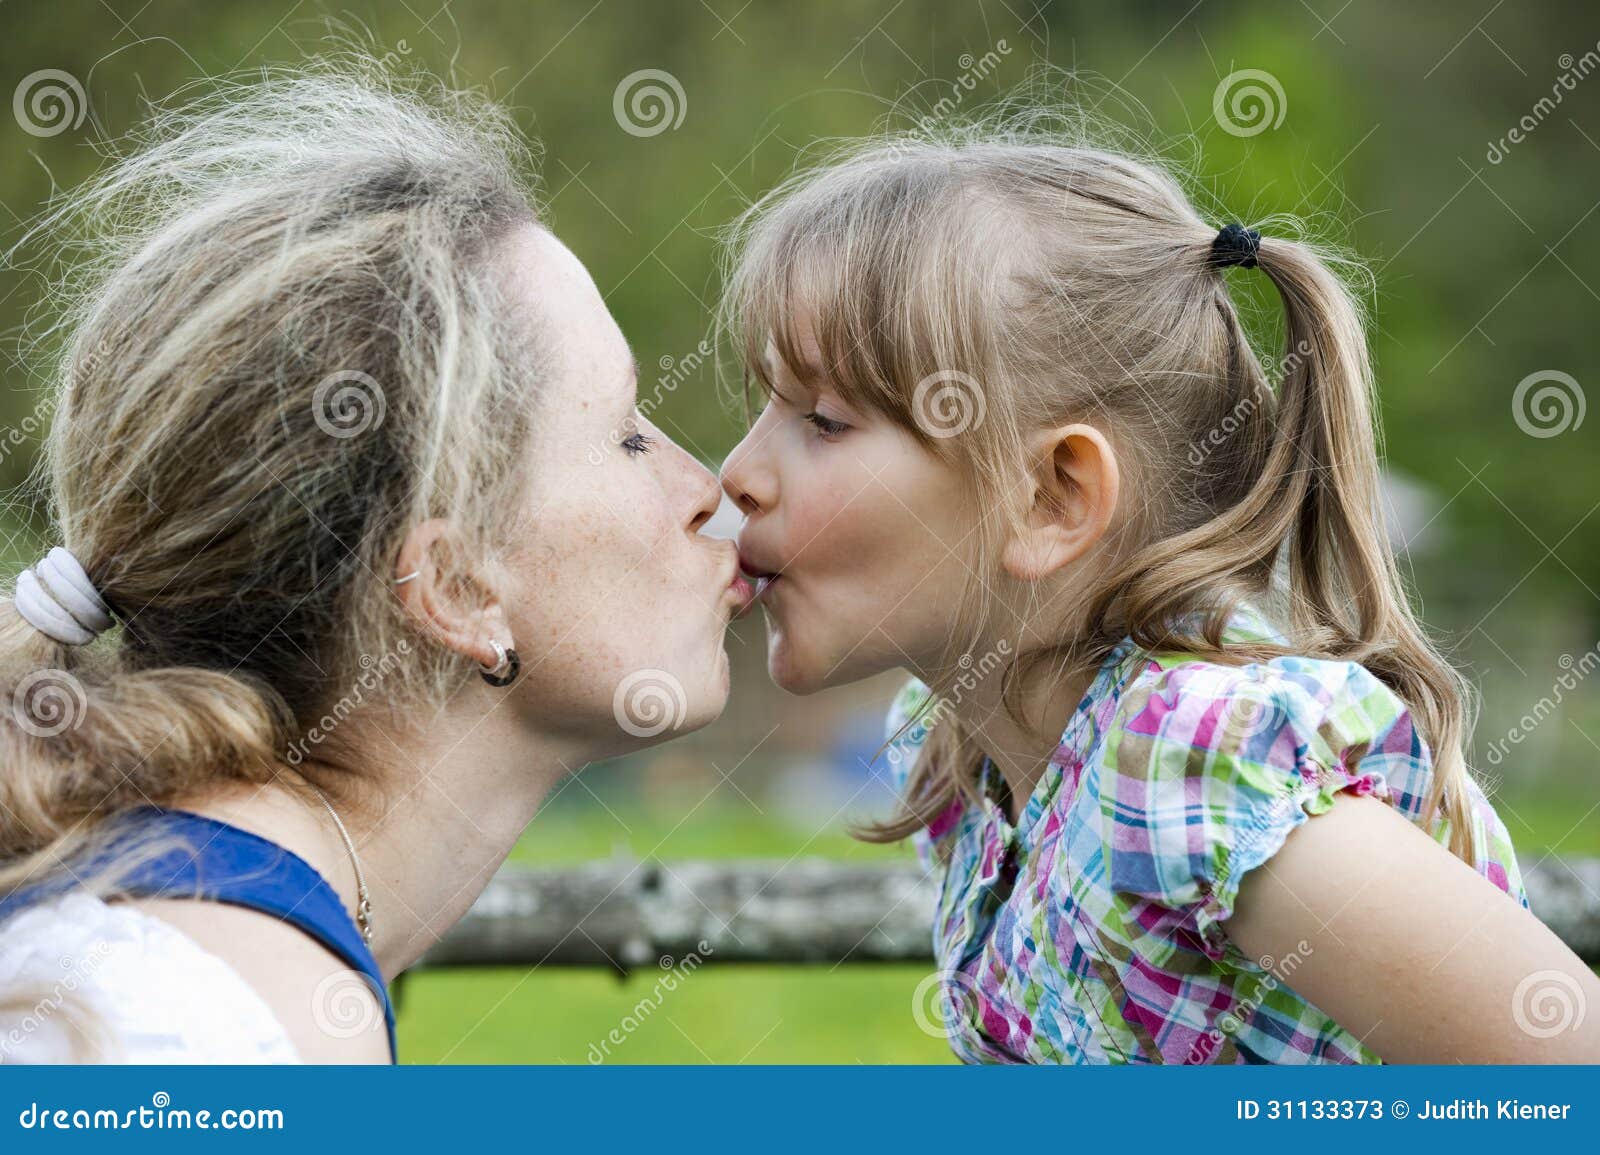 Мать лесбиянка лижет. Мать целует дочь. Мать и дочь поцелуй. Мама с дочкой поцелуи с языком.